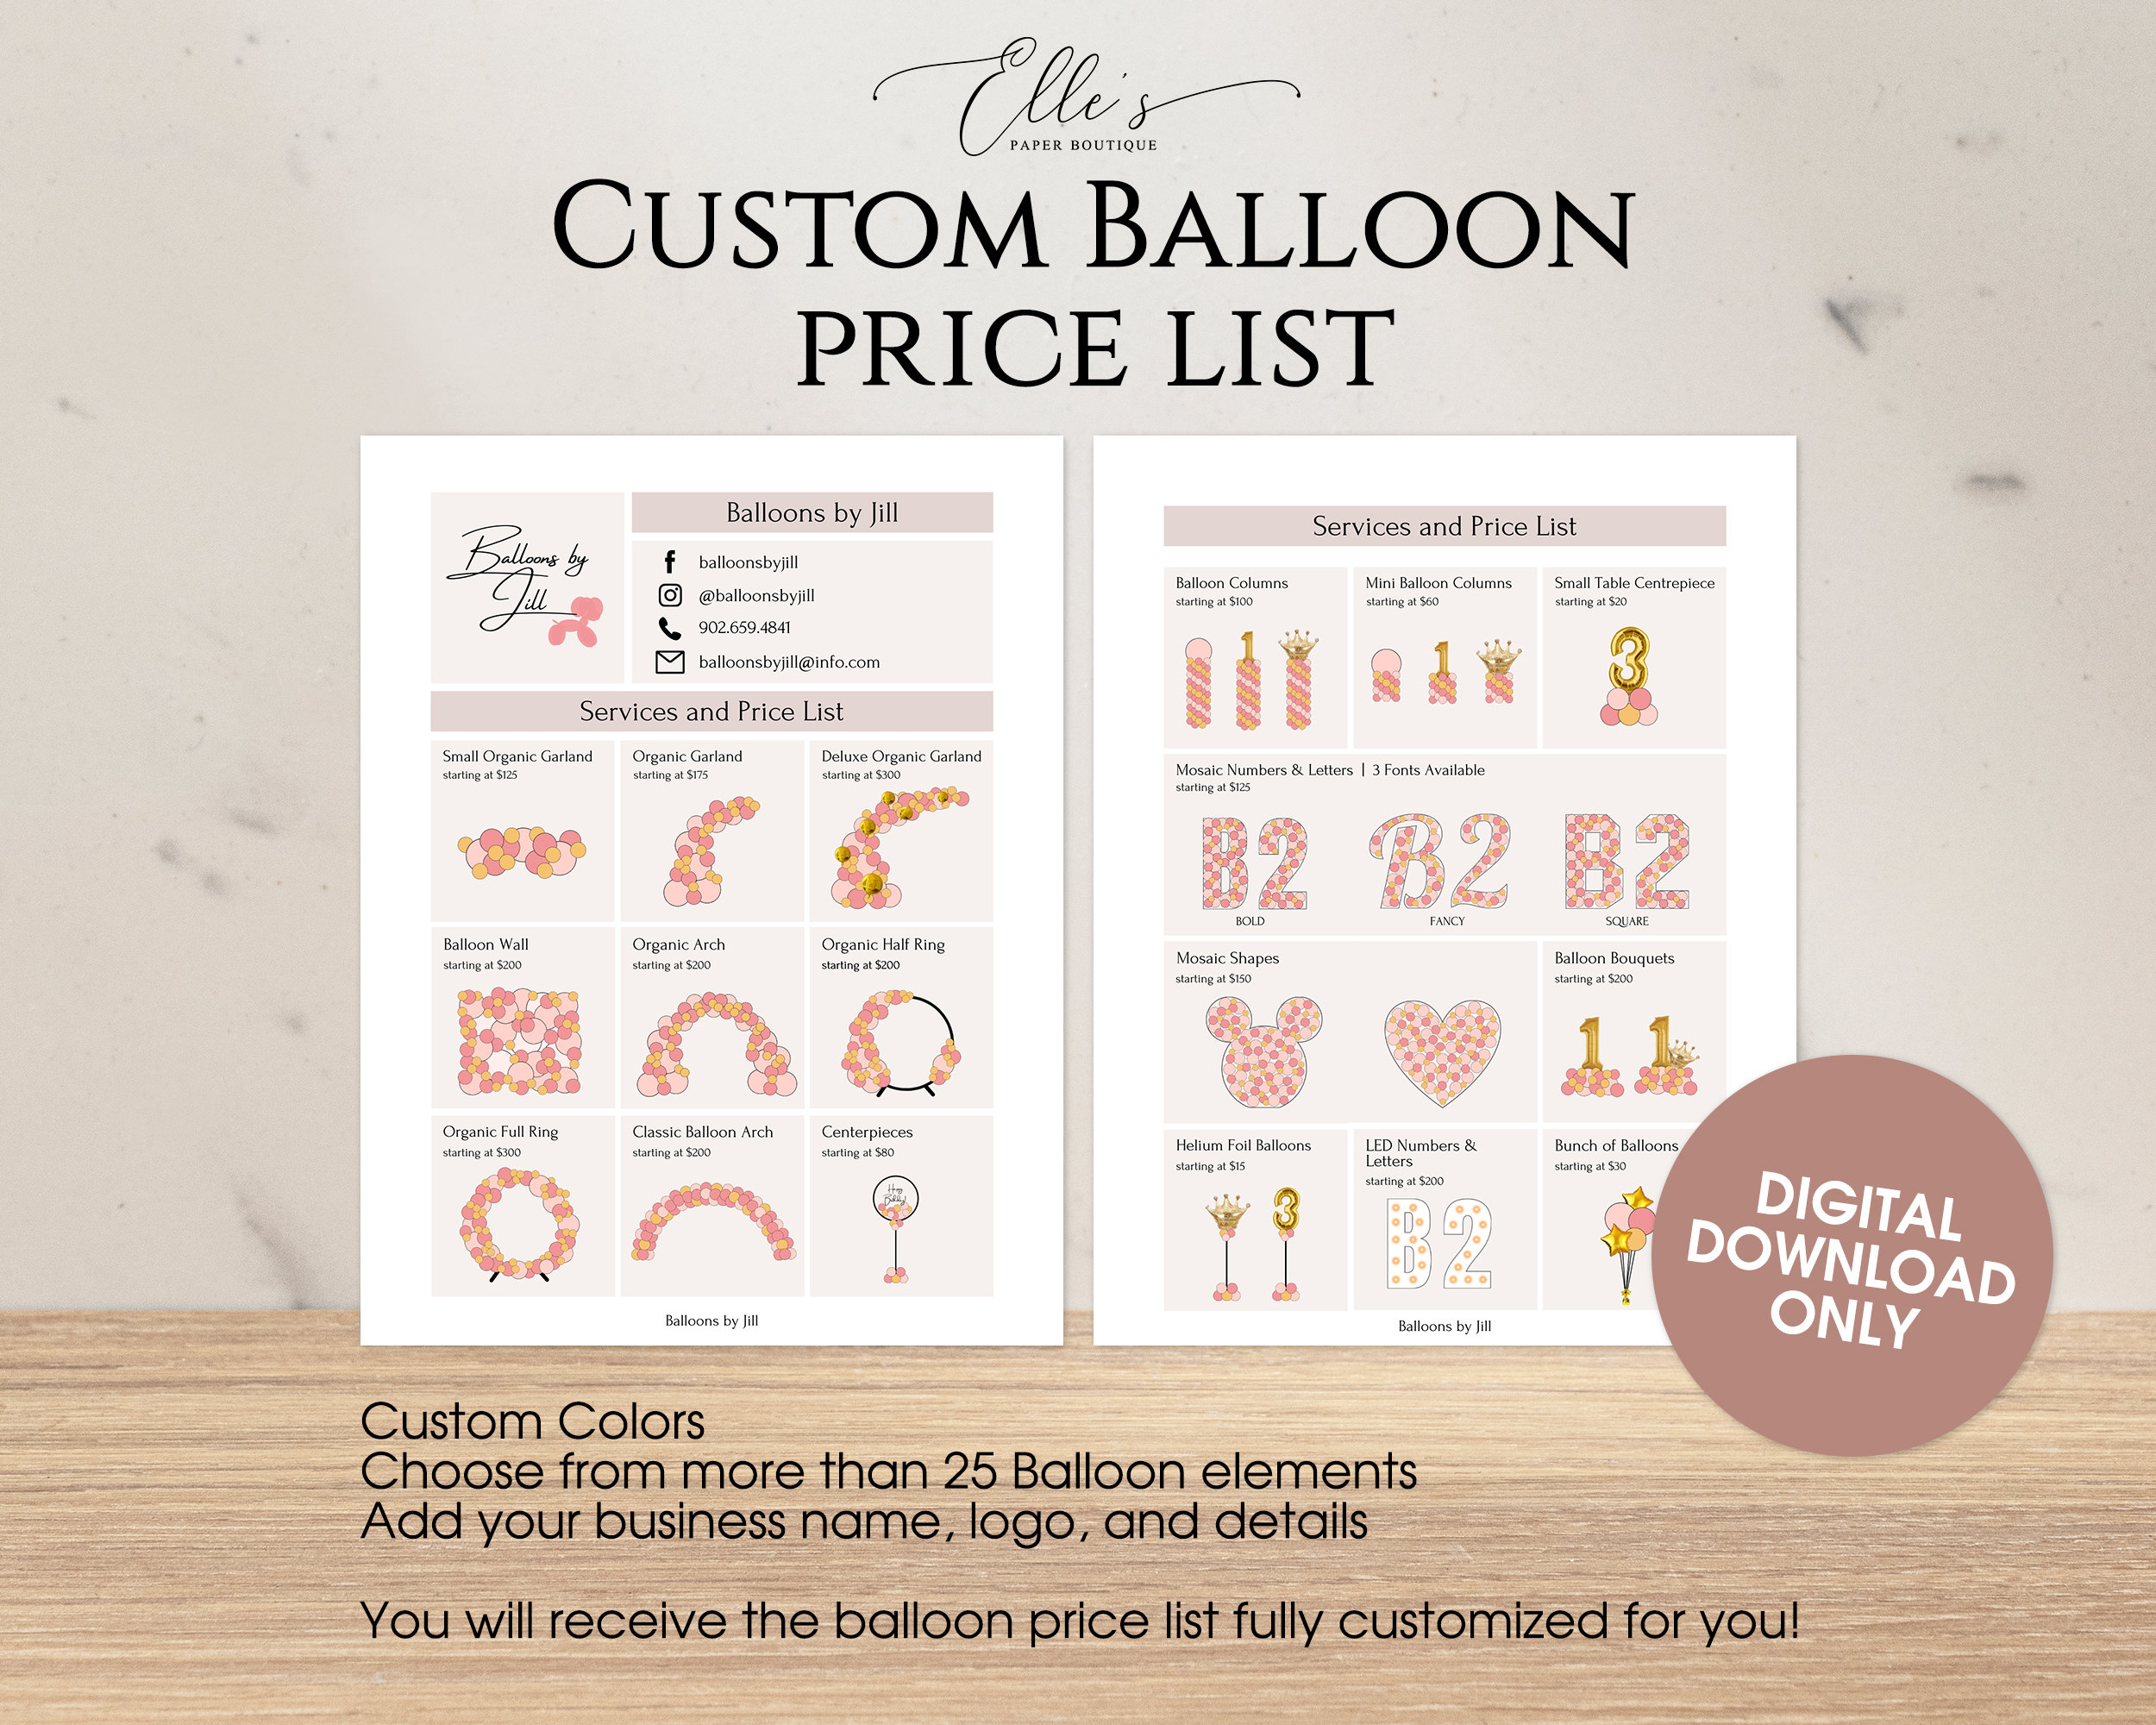 custom-balloon-menu-balloon-price-list-balloon-price-guide-etsy-custom-balloons-birthday